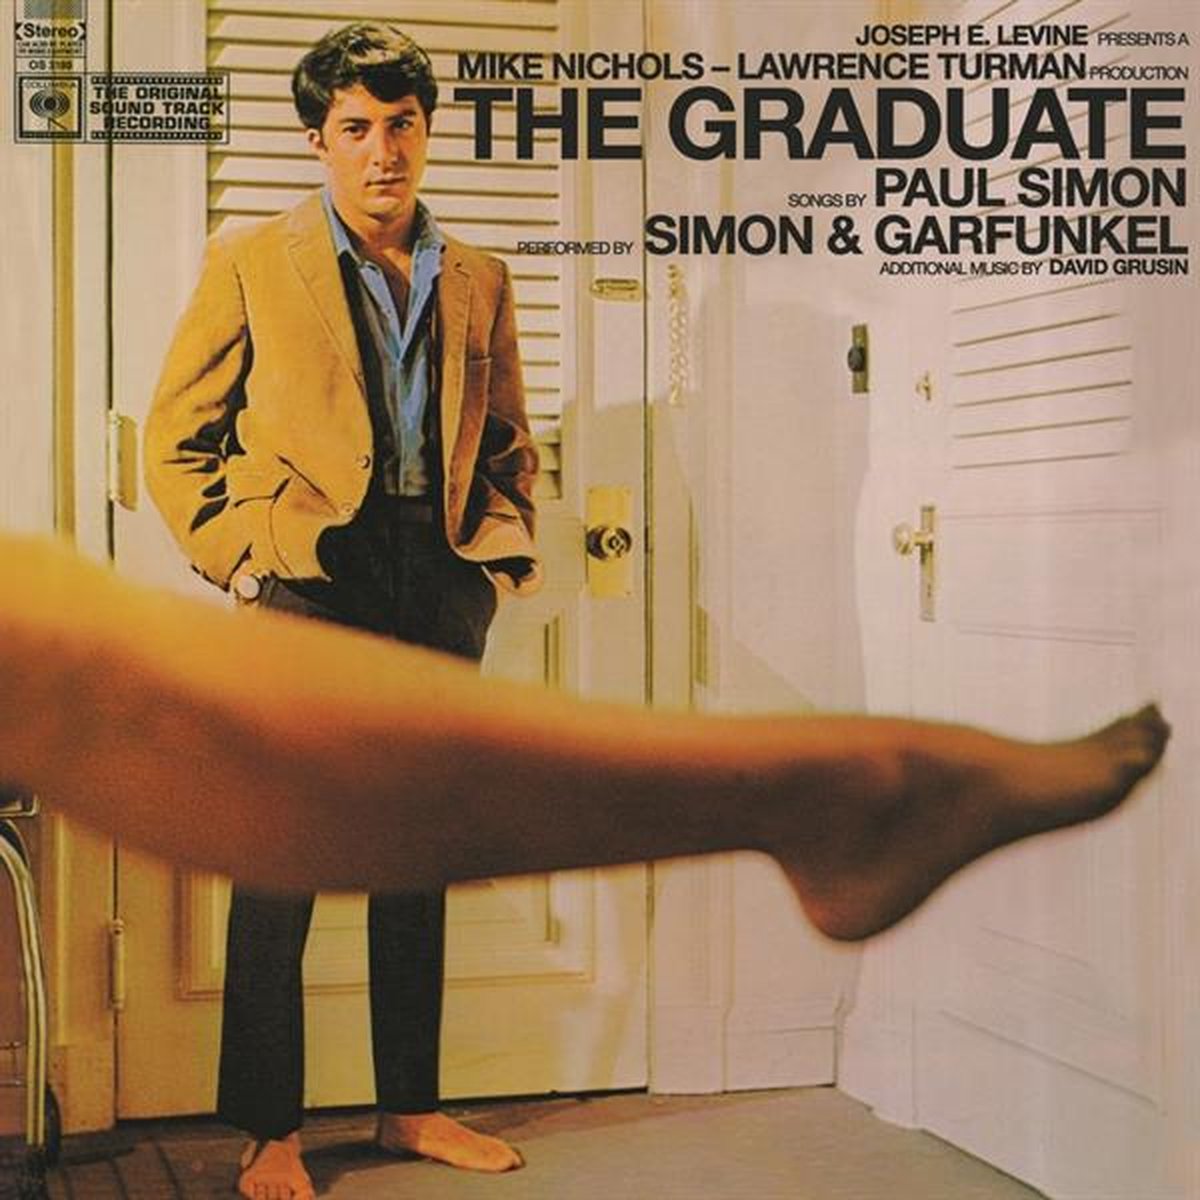 Paul Simon & Art Garfunkel - Graduate (LP) - Ost